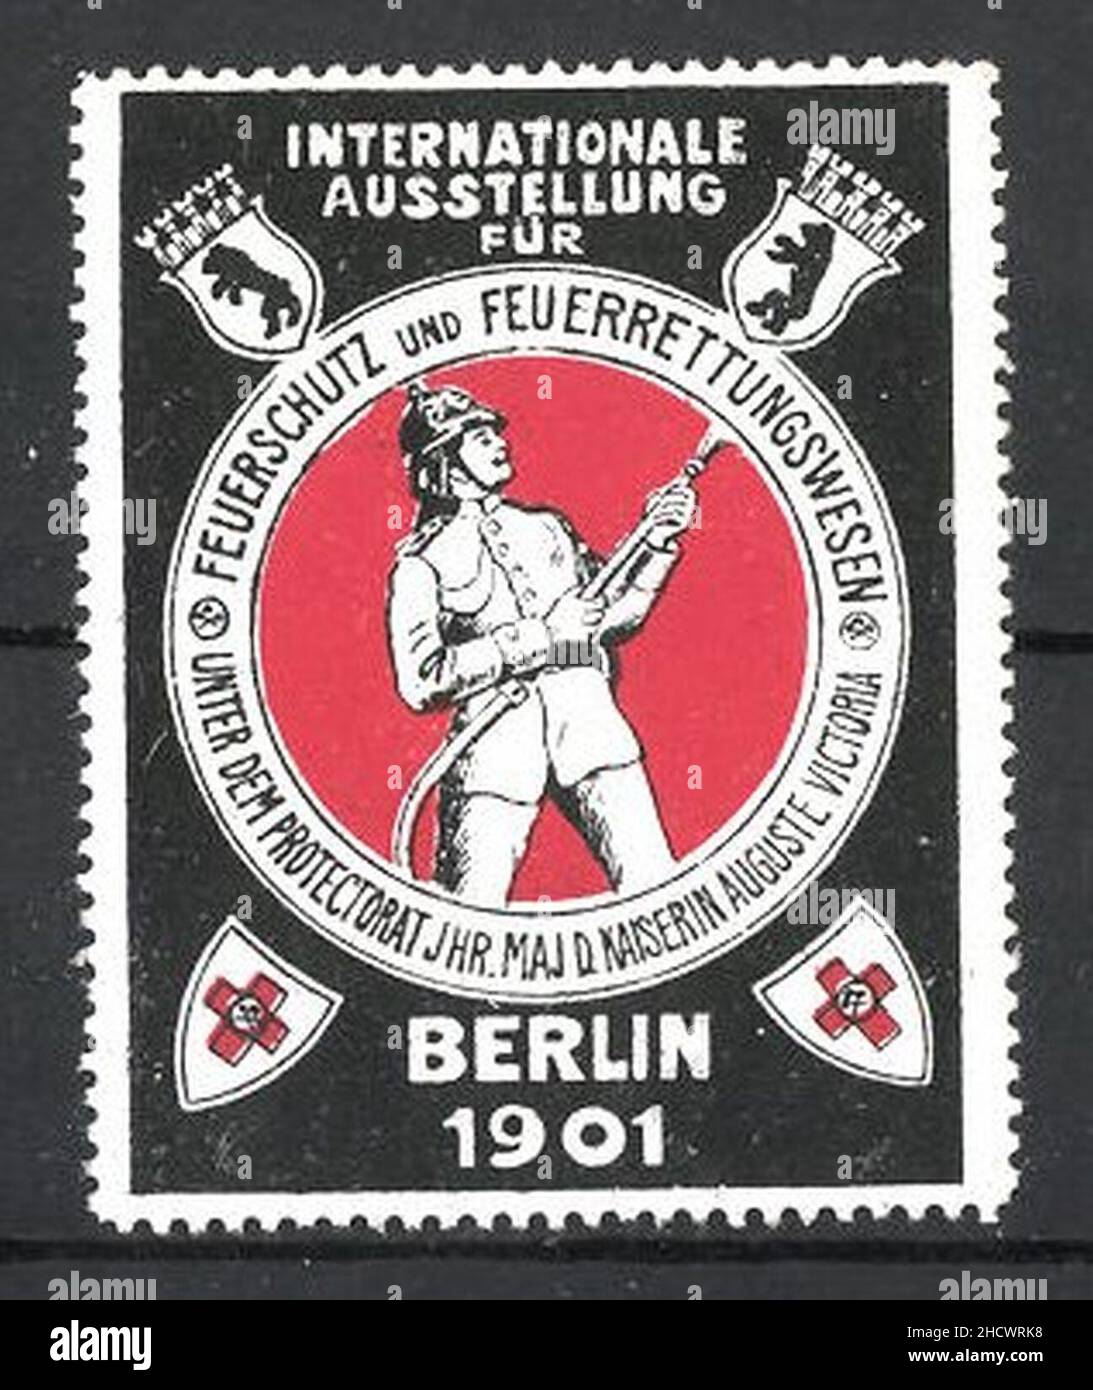 Reklamemarke-Berlin-Int-Ausstellung-fuer-Feuerschutz-und-Feuerrettungswesen-1901-Feuerwehrmann-mit-Spritze-beim-Loeschen. Stock Photo